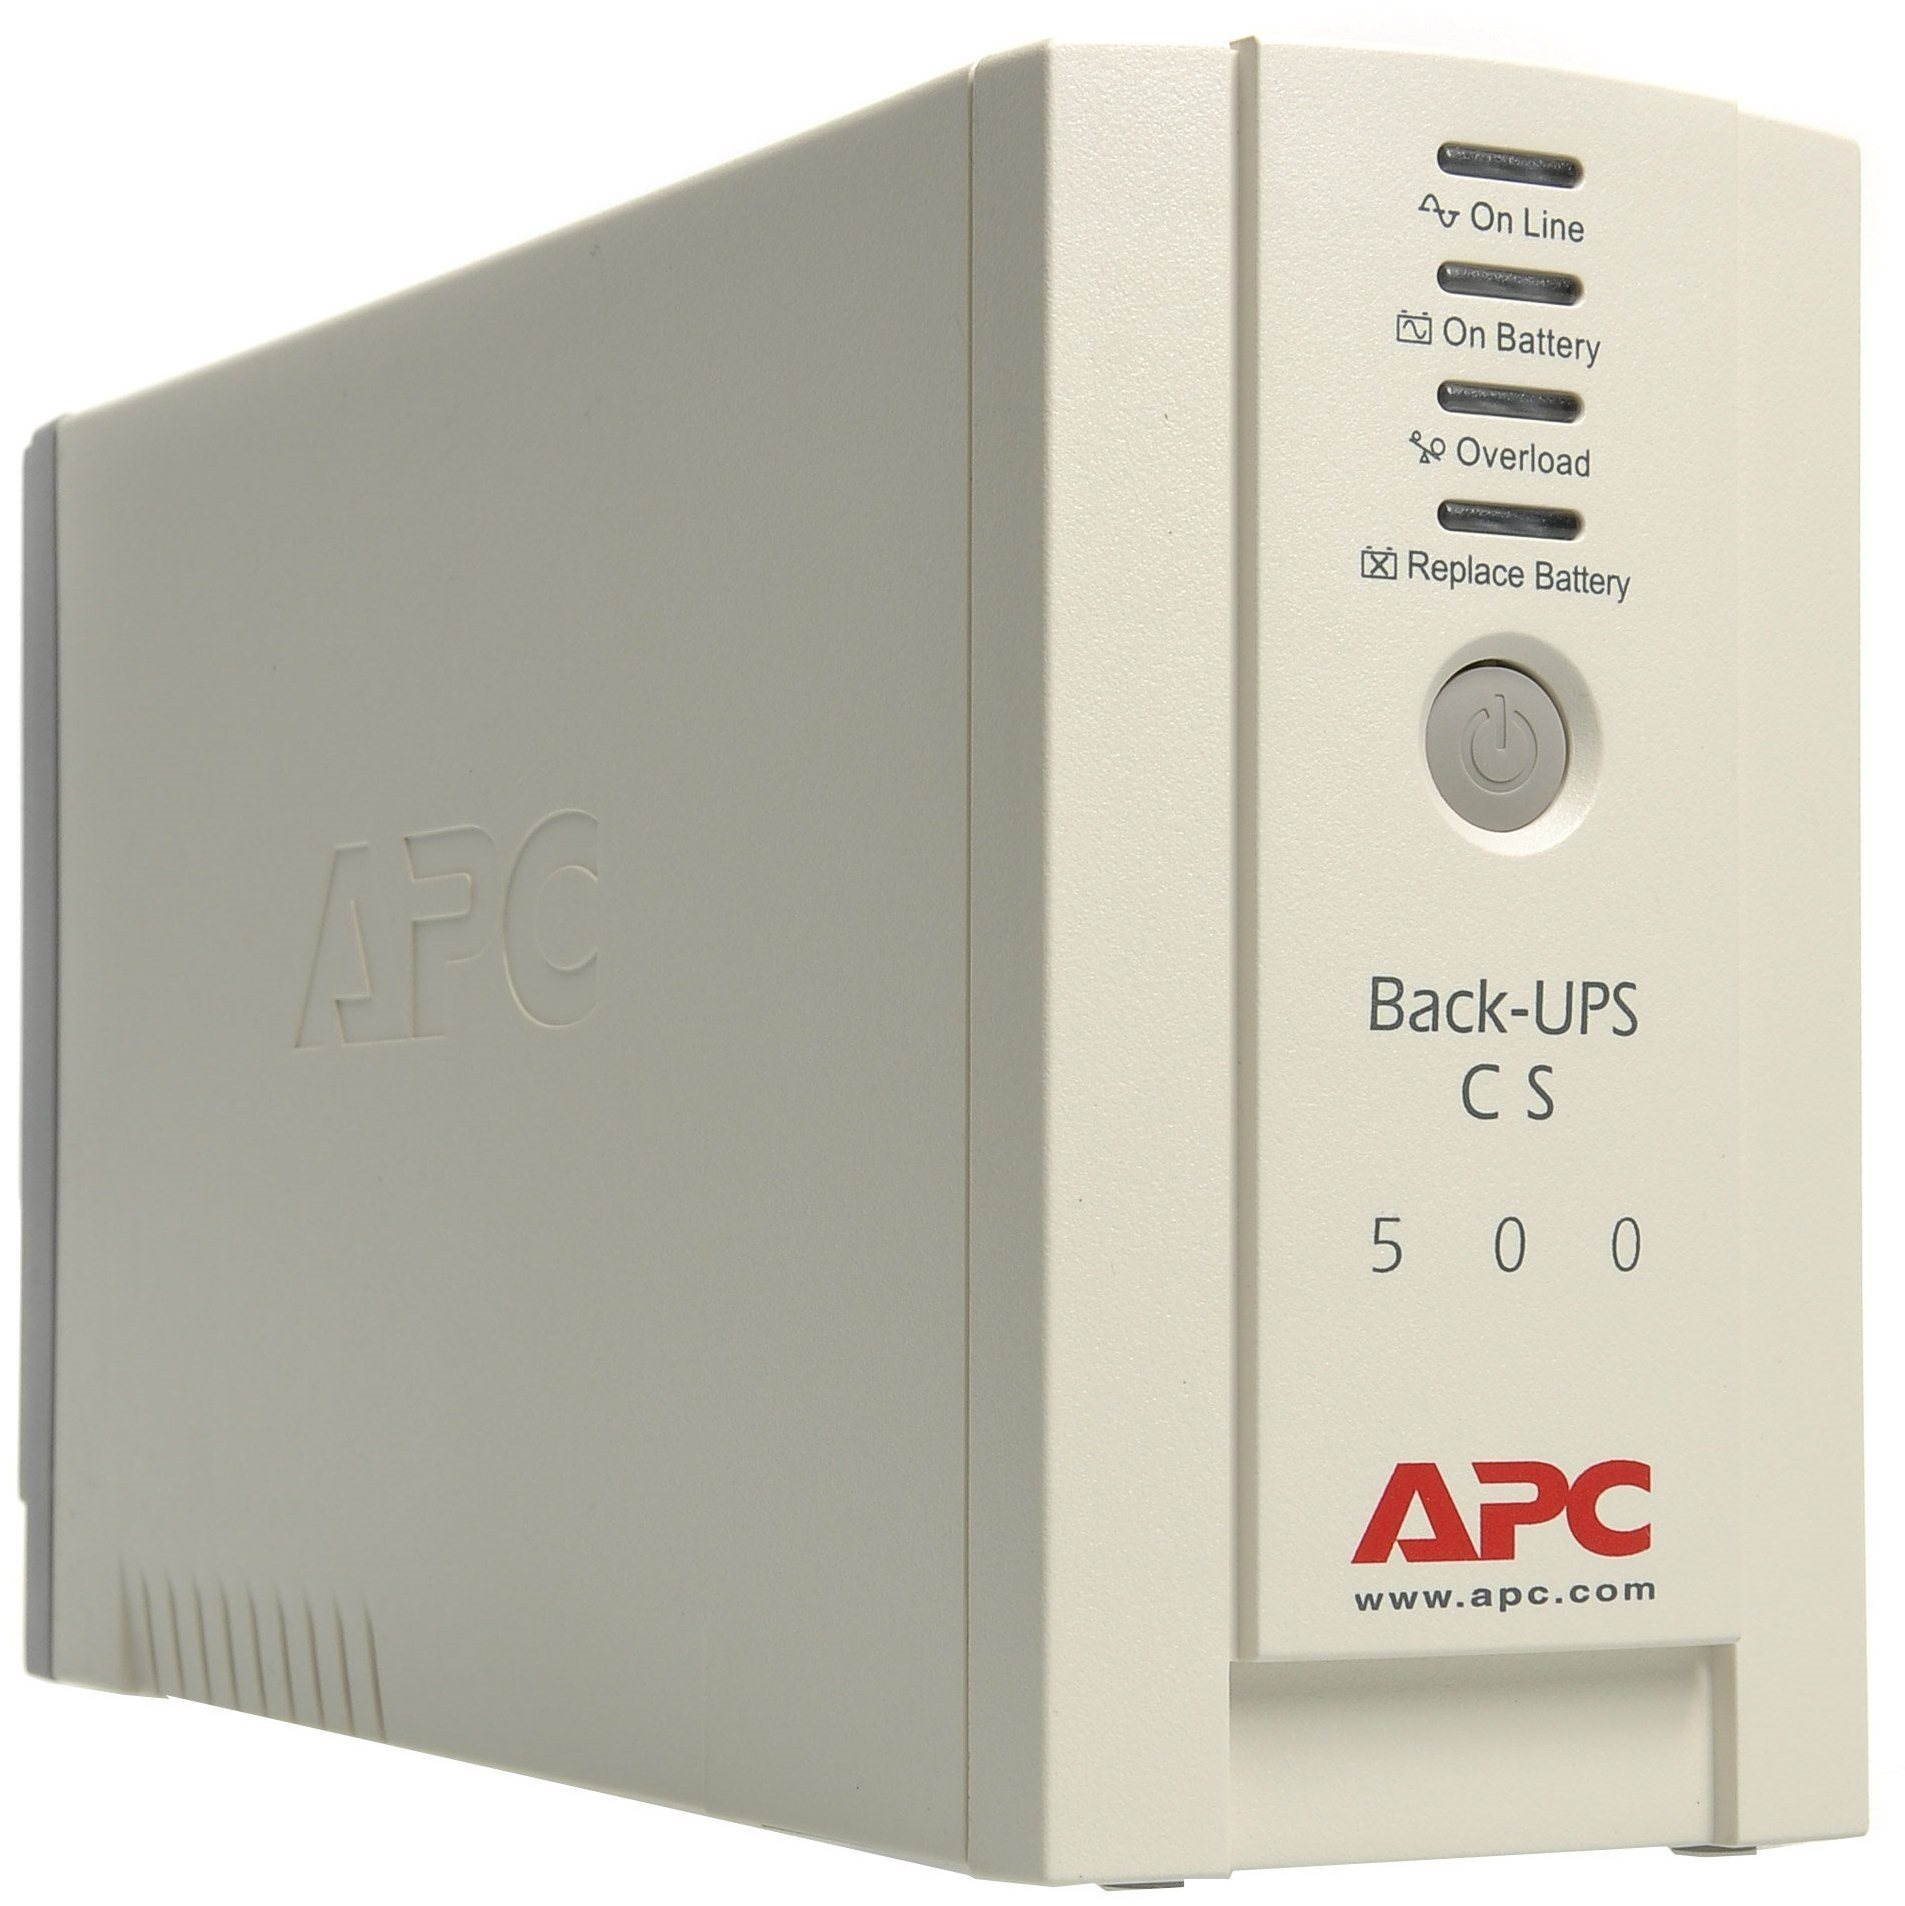 APC Back-UPS CS 500i